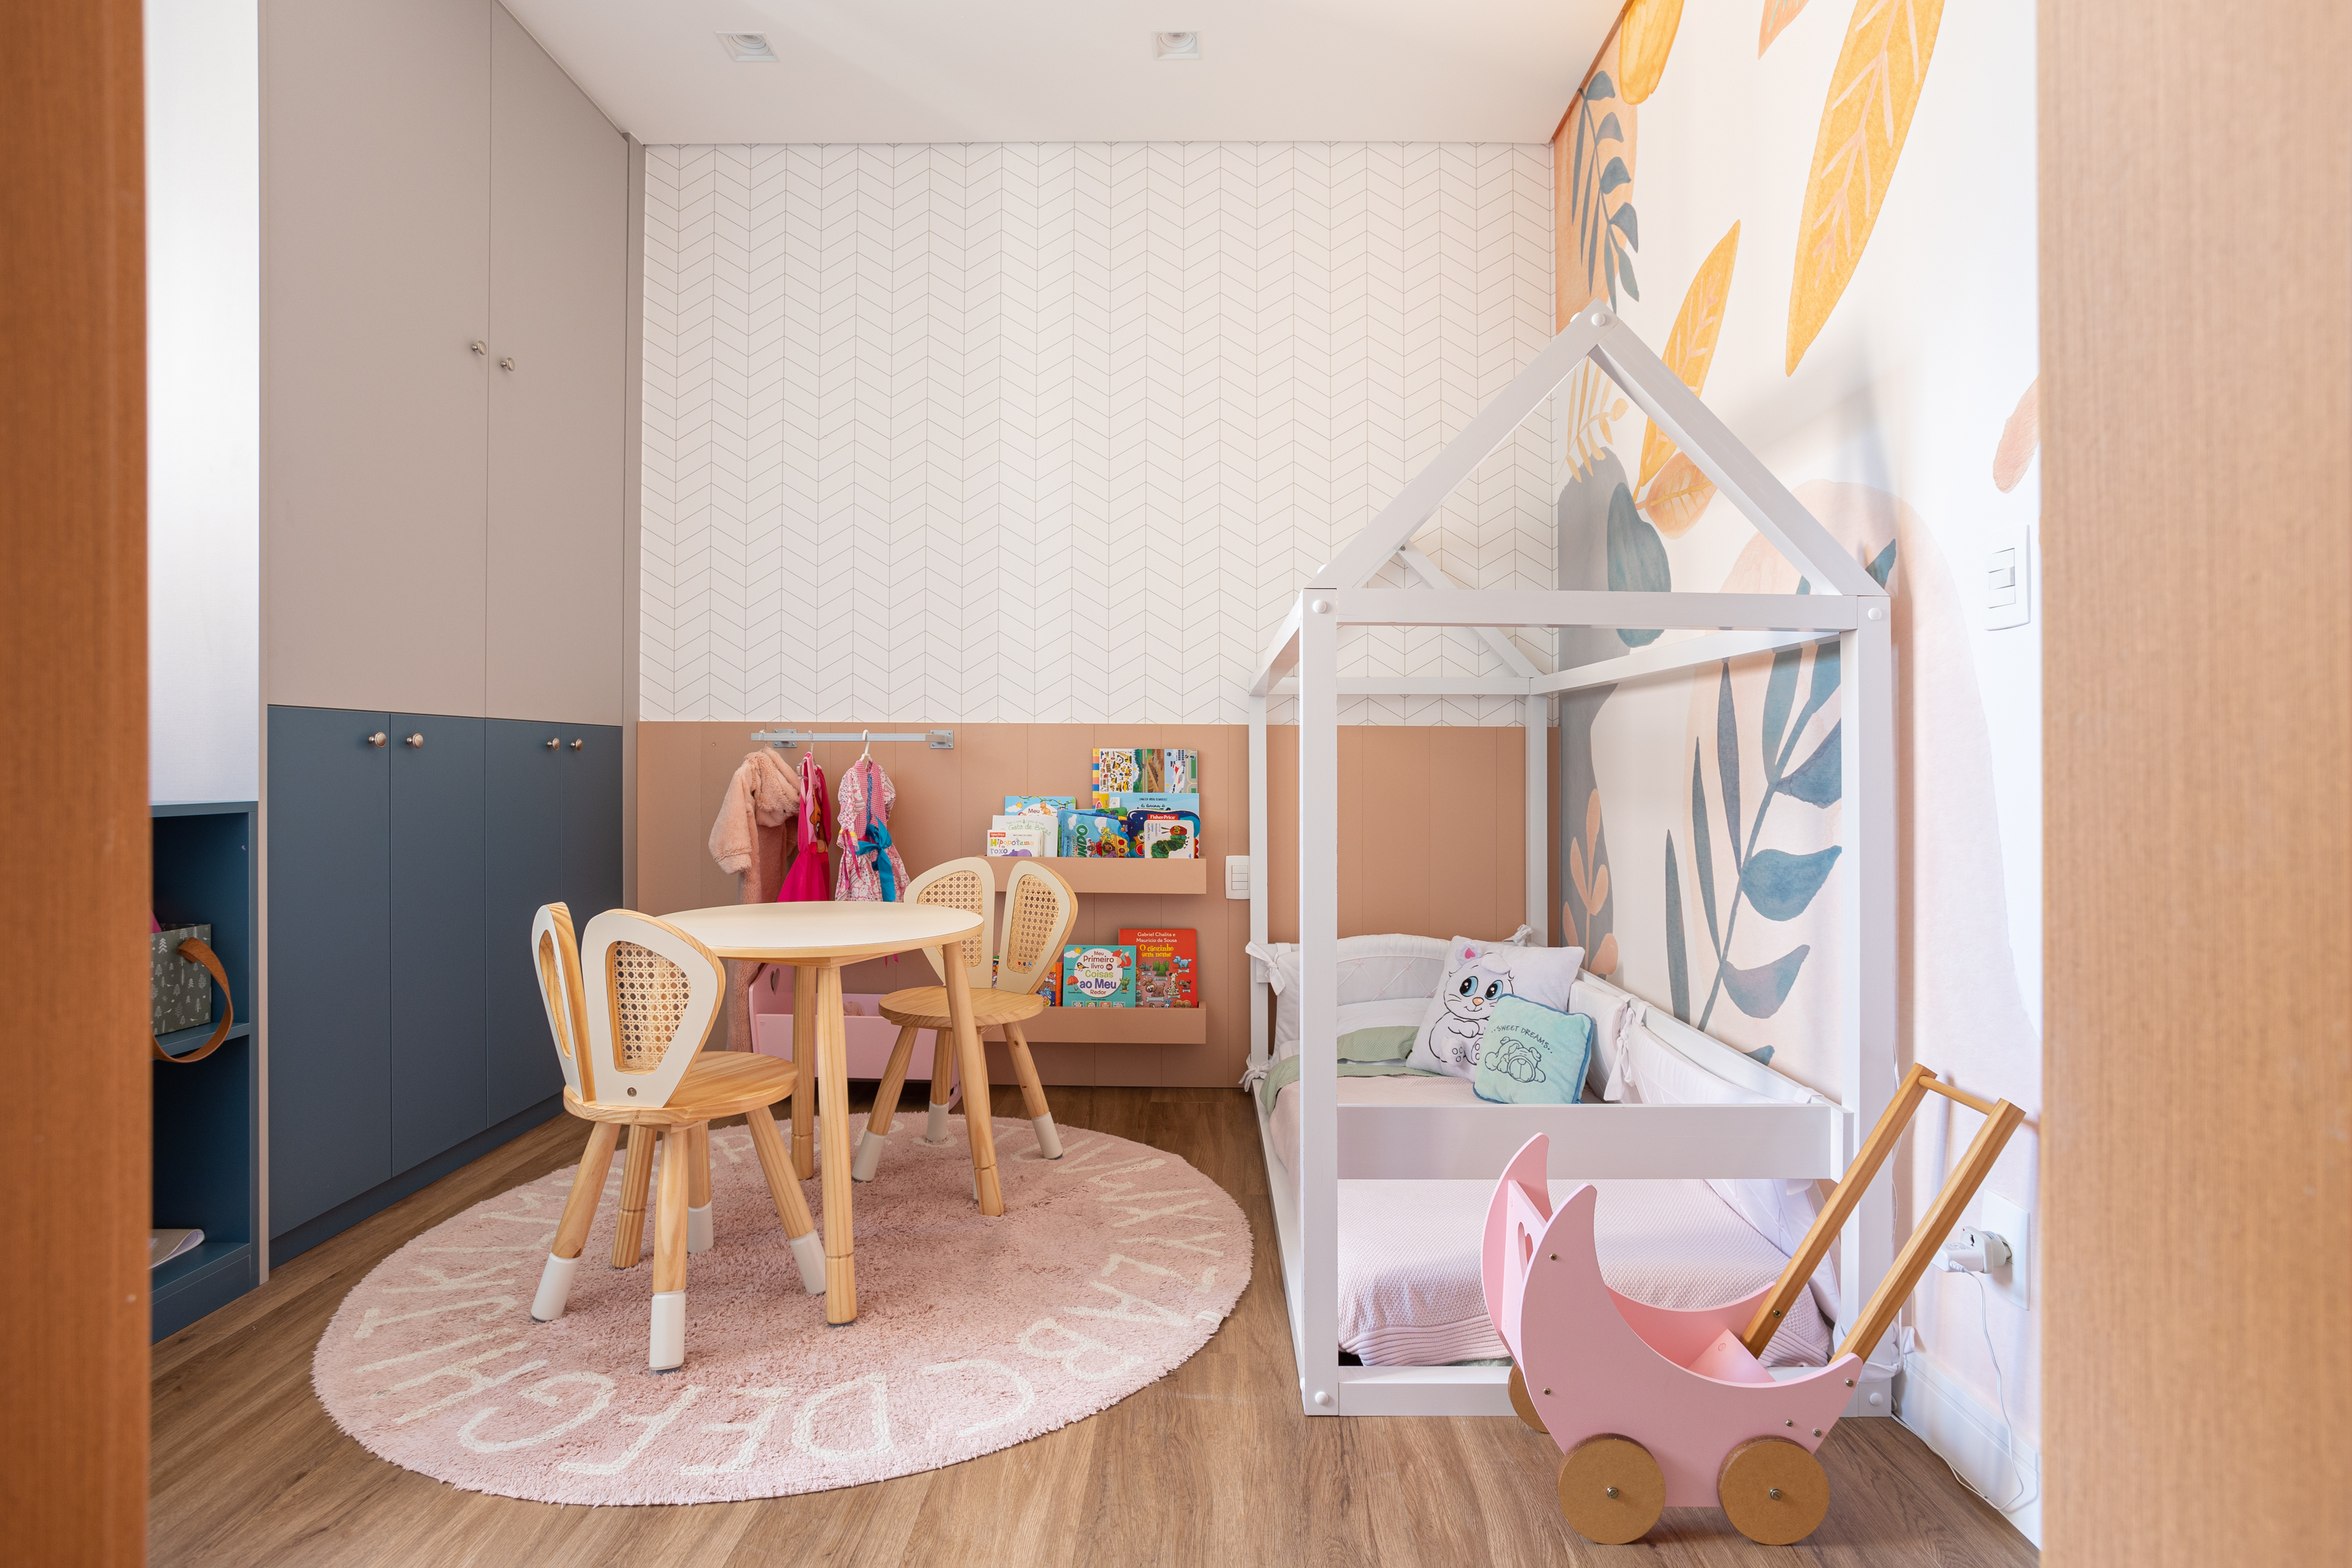 Apartamento de 140 m² possui parede de pedra moledo e quarto montessoriano. Projeto Loft 7 Arquitetura. Na foto, quarto infantil montessoriano com cama casinha e mesa.